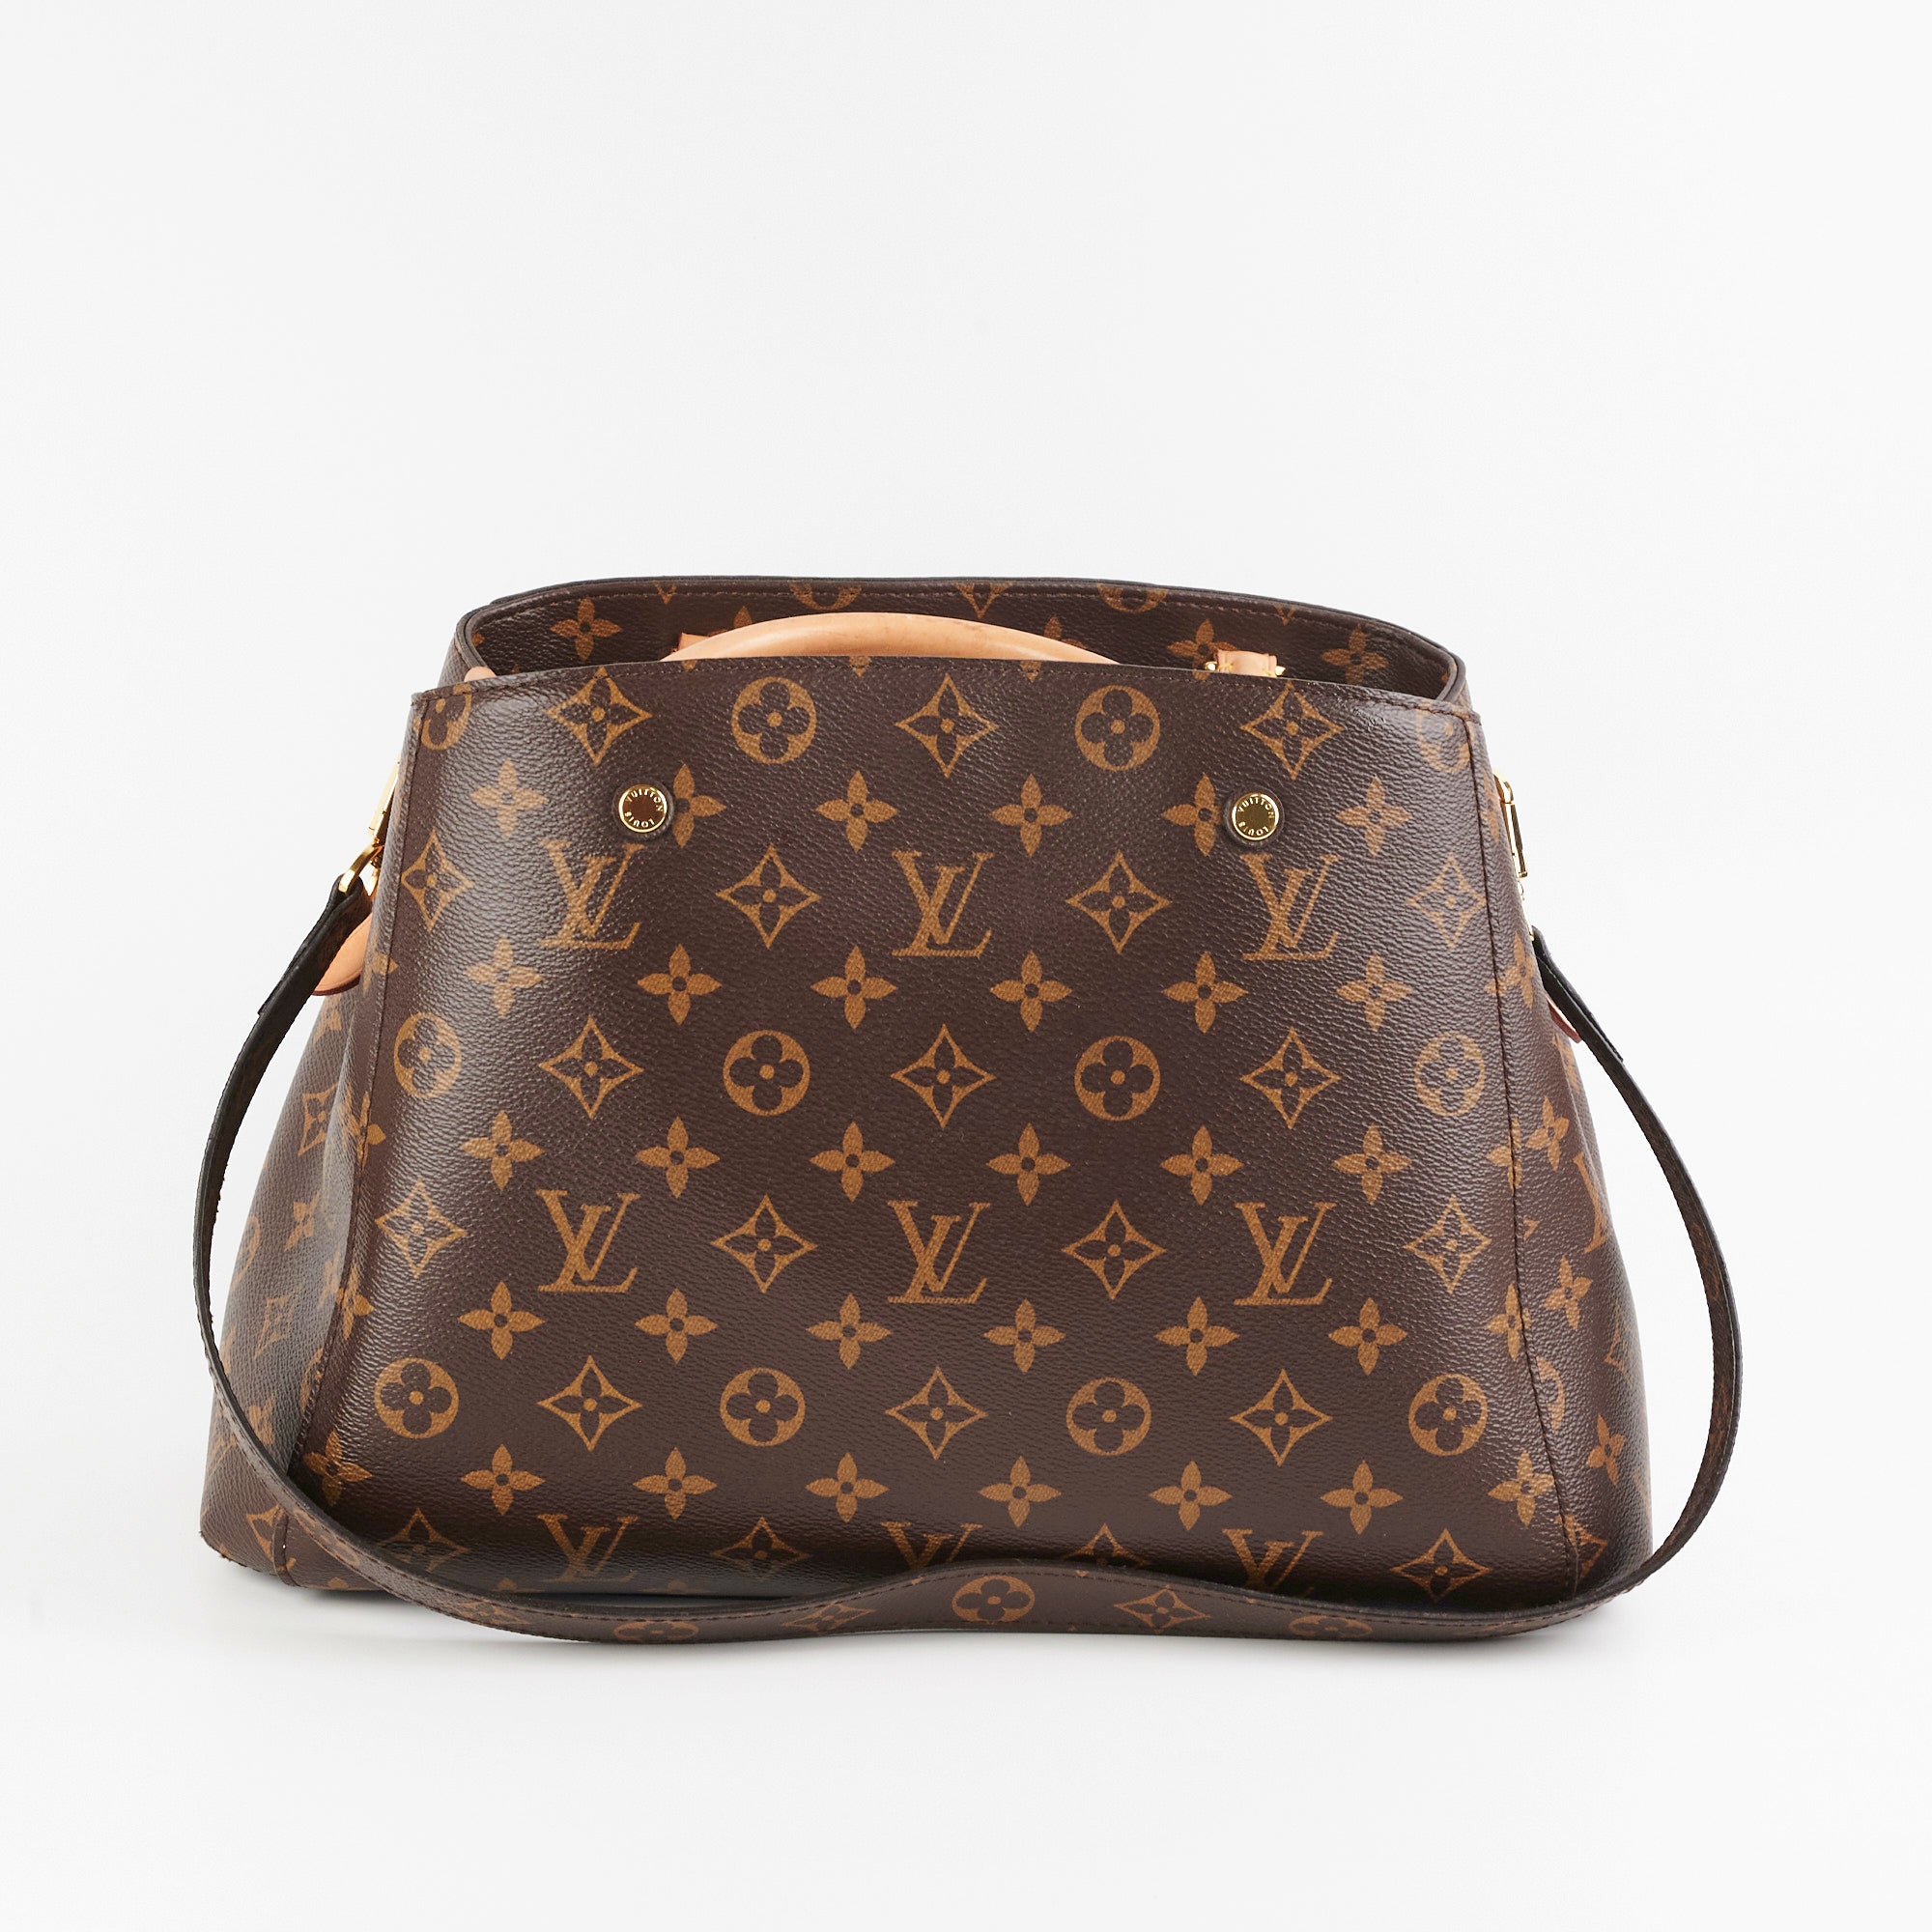 Louis Vuitton Micro Speedy Bag Charm - THE PURSE AFFAIR